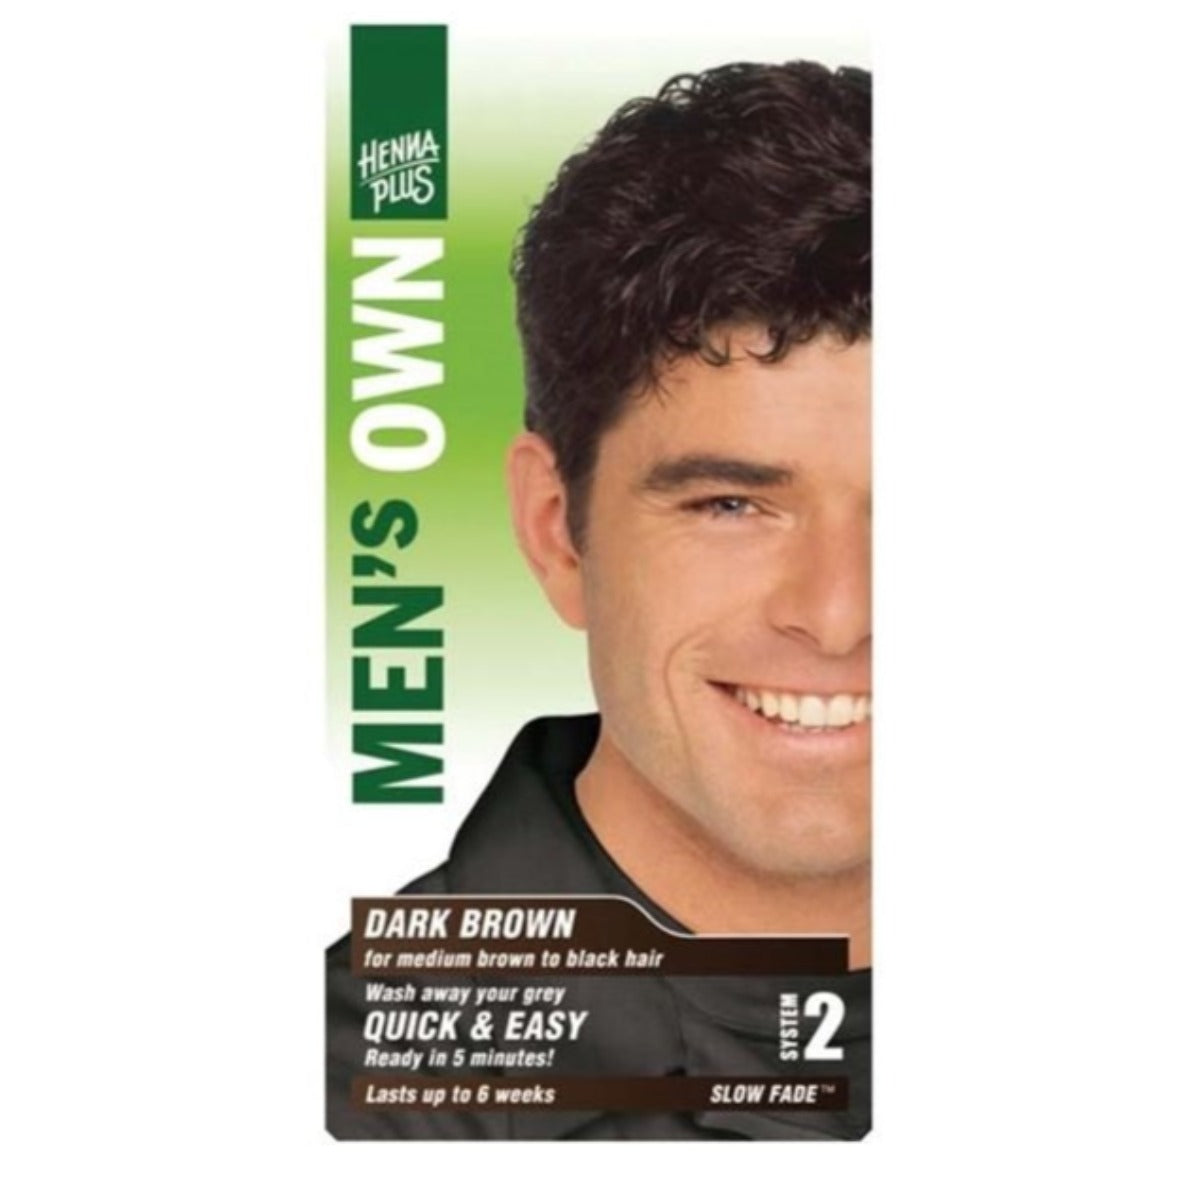 Henna Plus Men's Own Hair Colour Dark Brown 80mL Hair Colour at Village Vitamin Store